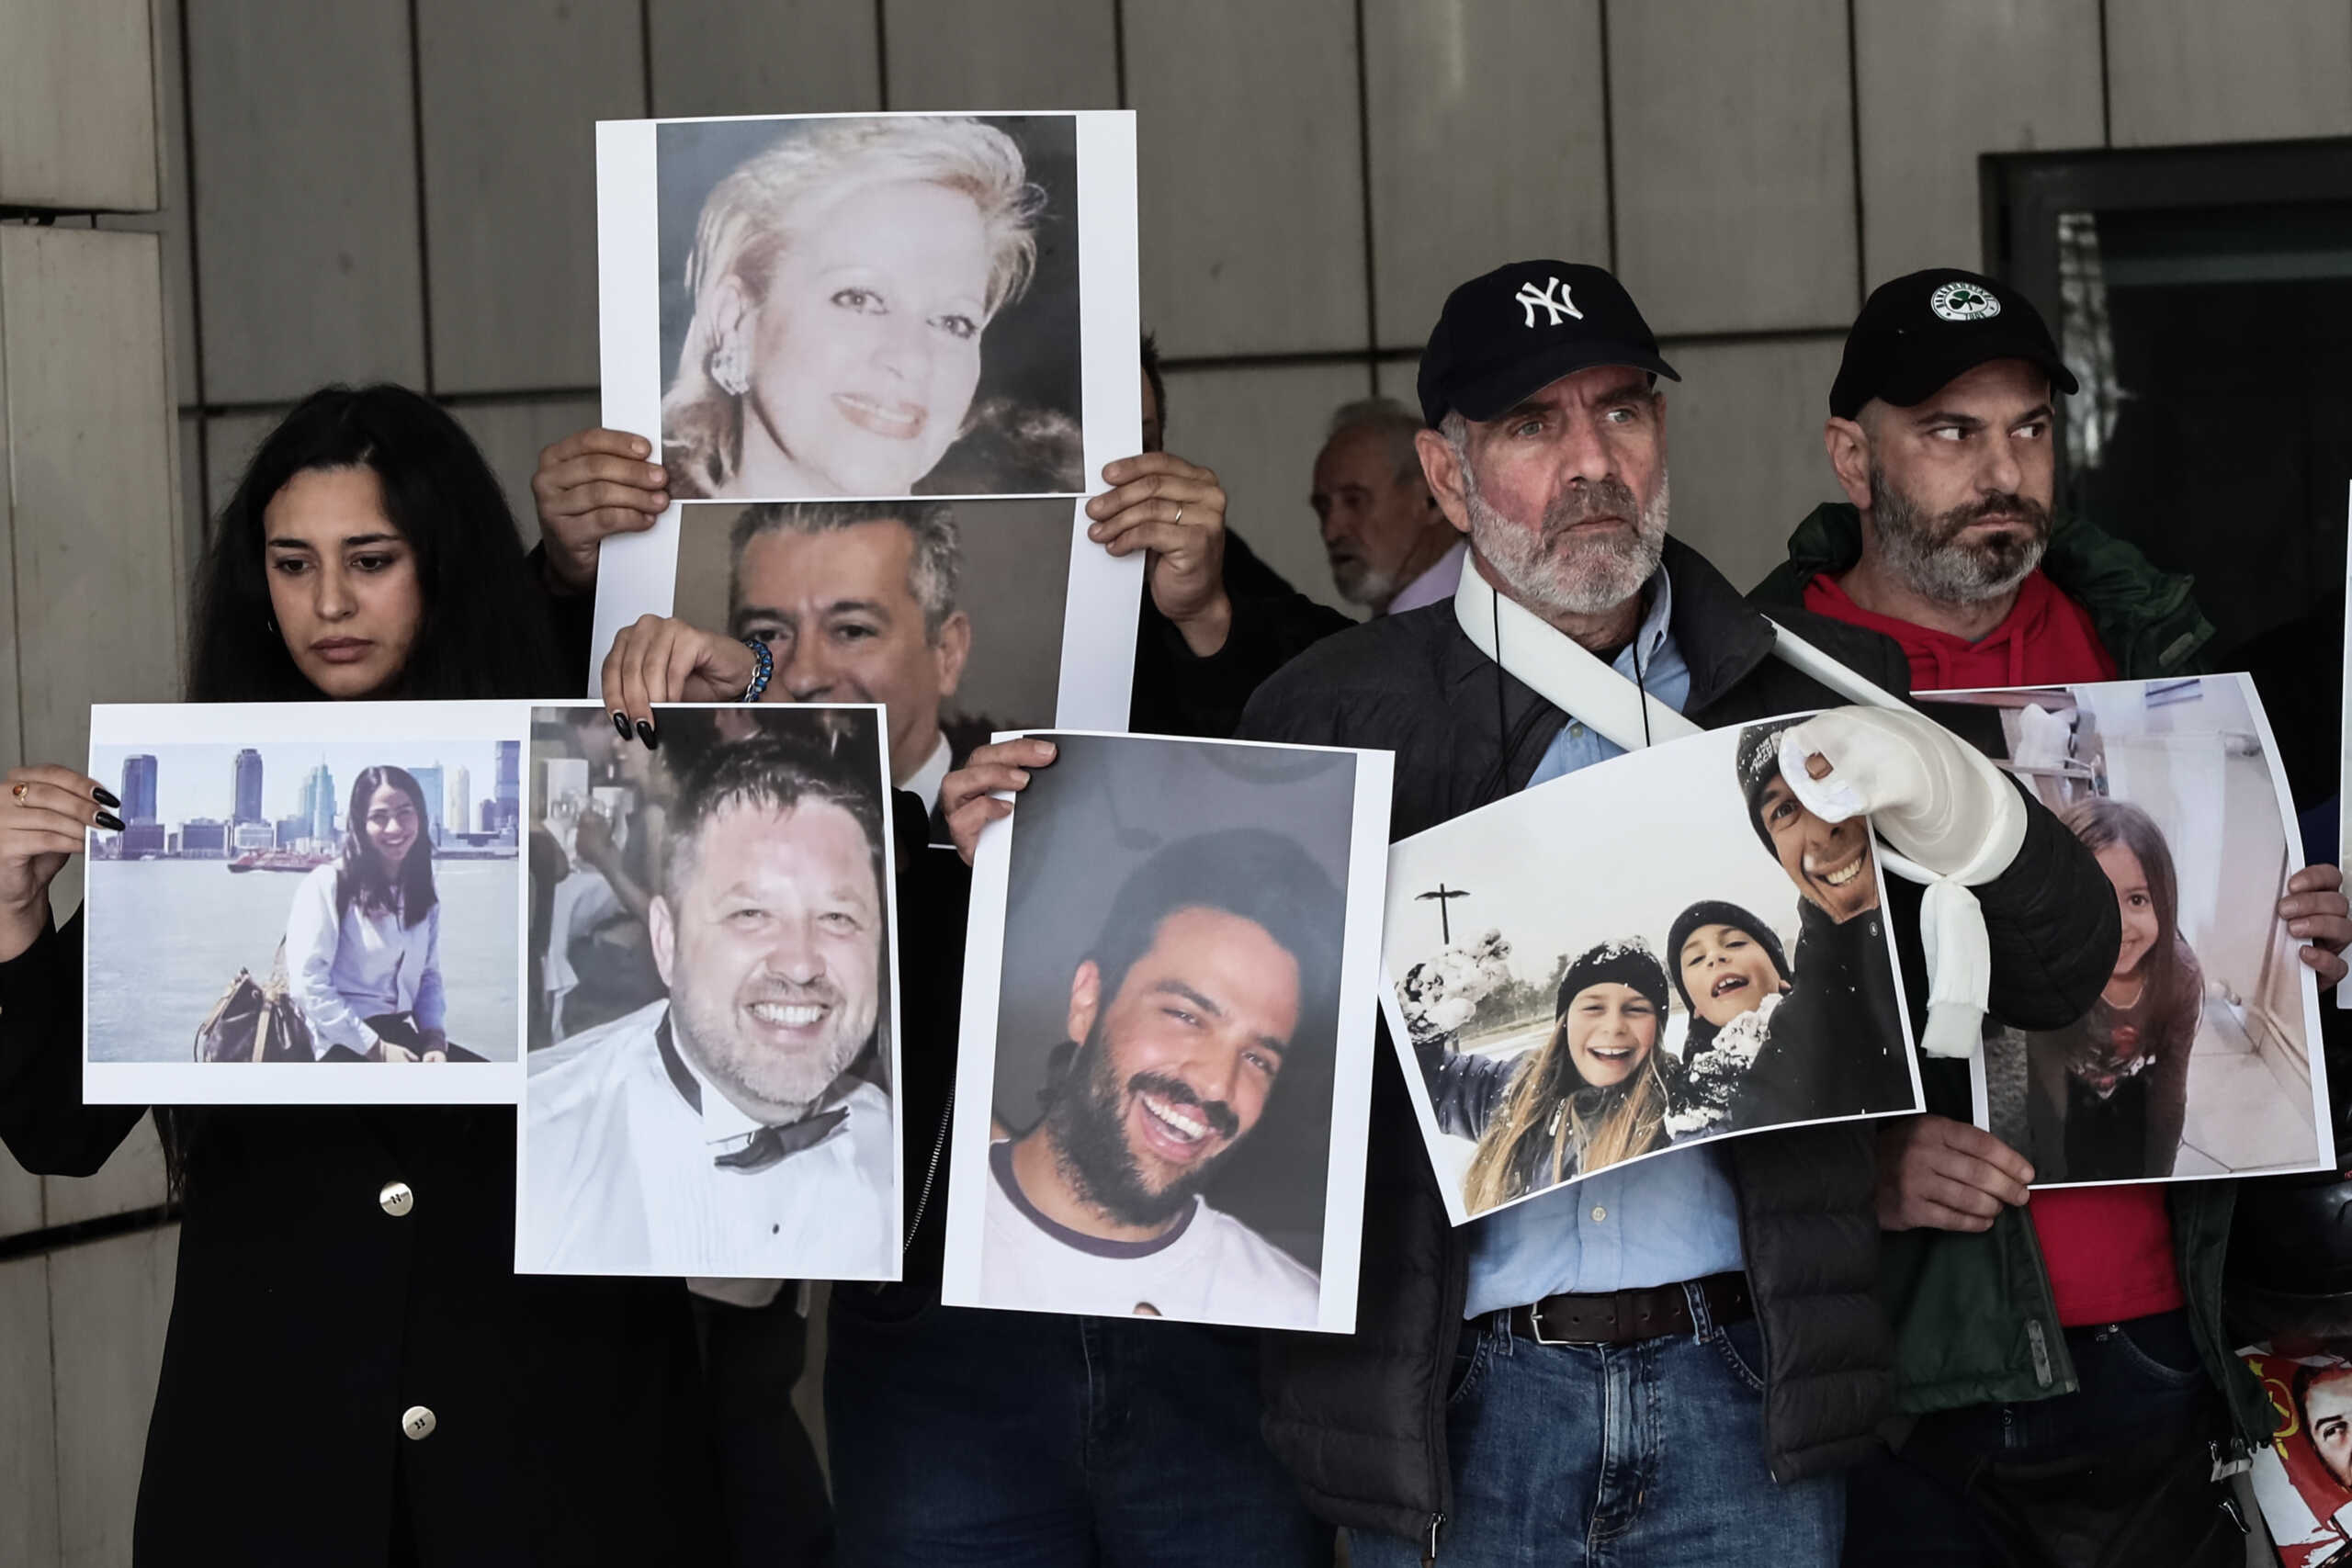 Μάτι: Ασκήθηκε έφεση για όλους τους κατηγορούμενους της εθνικής τραγωδίας